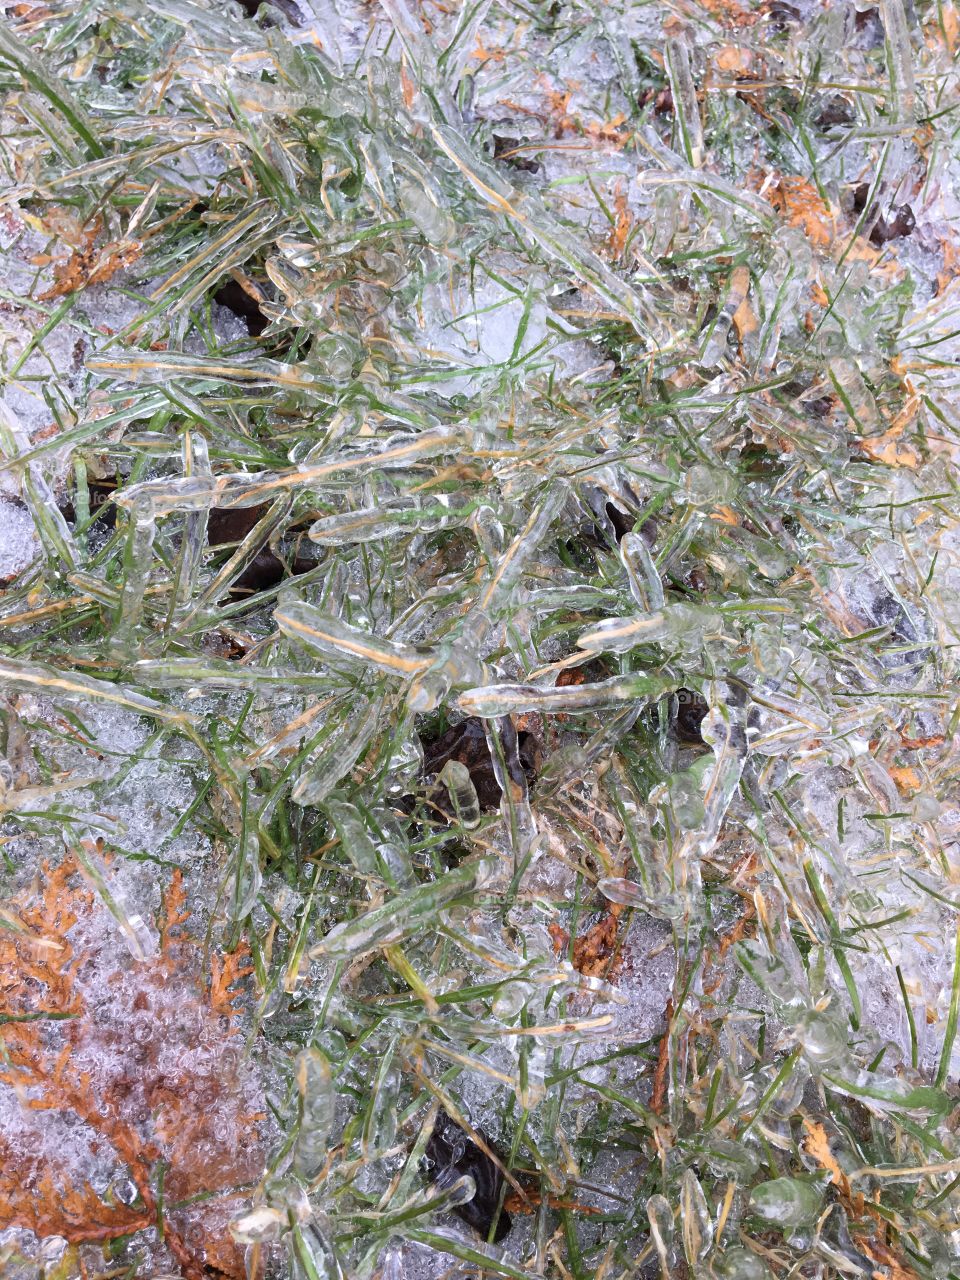 Frozen grass after an ice storm. 